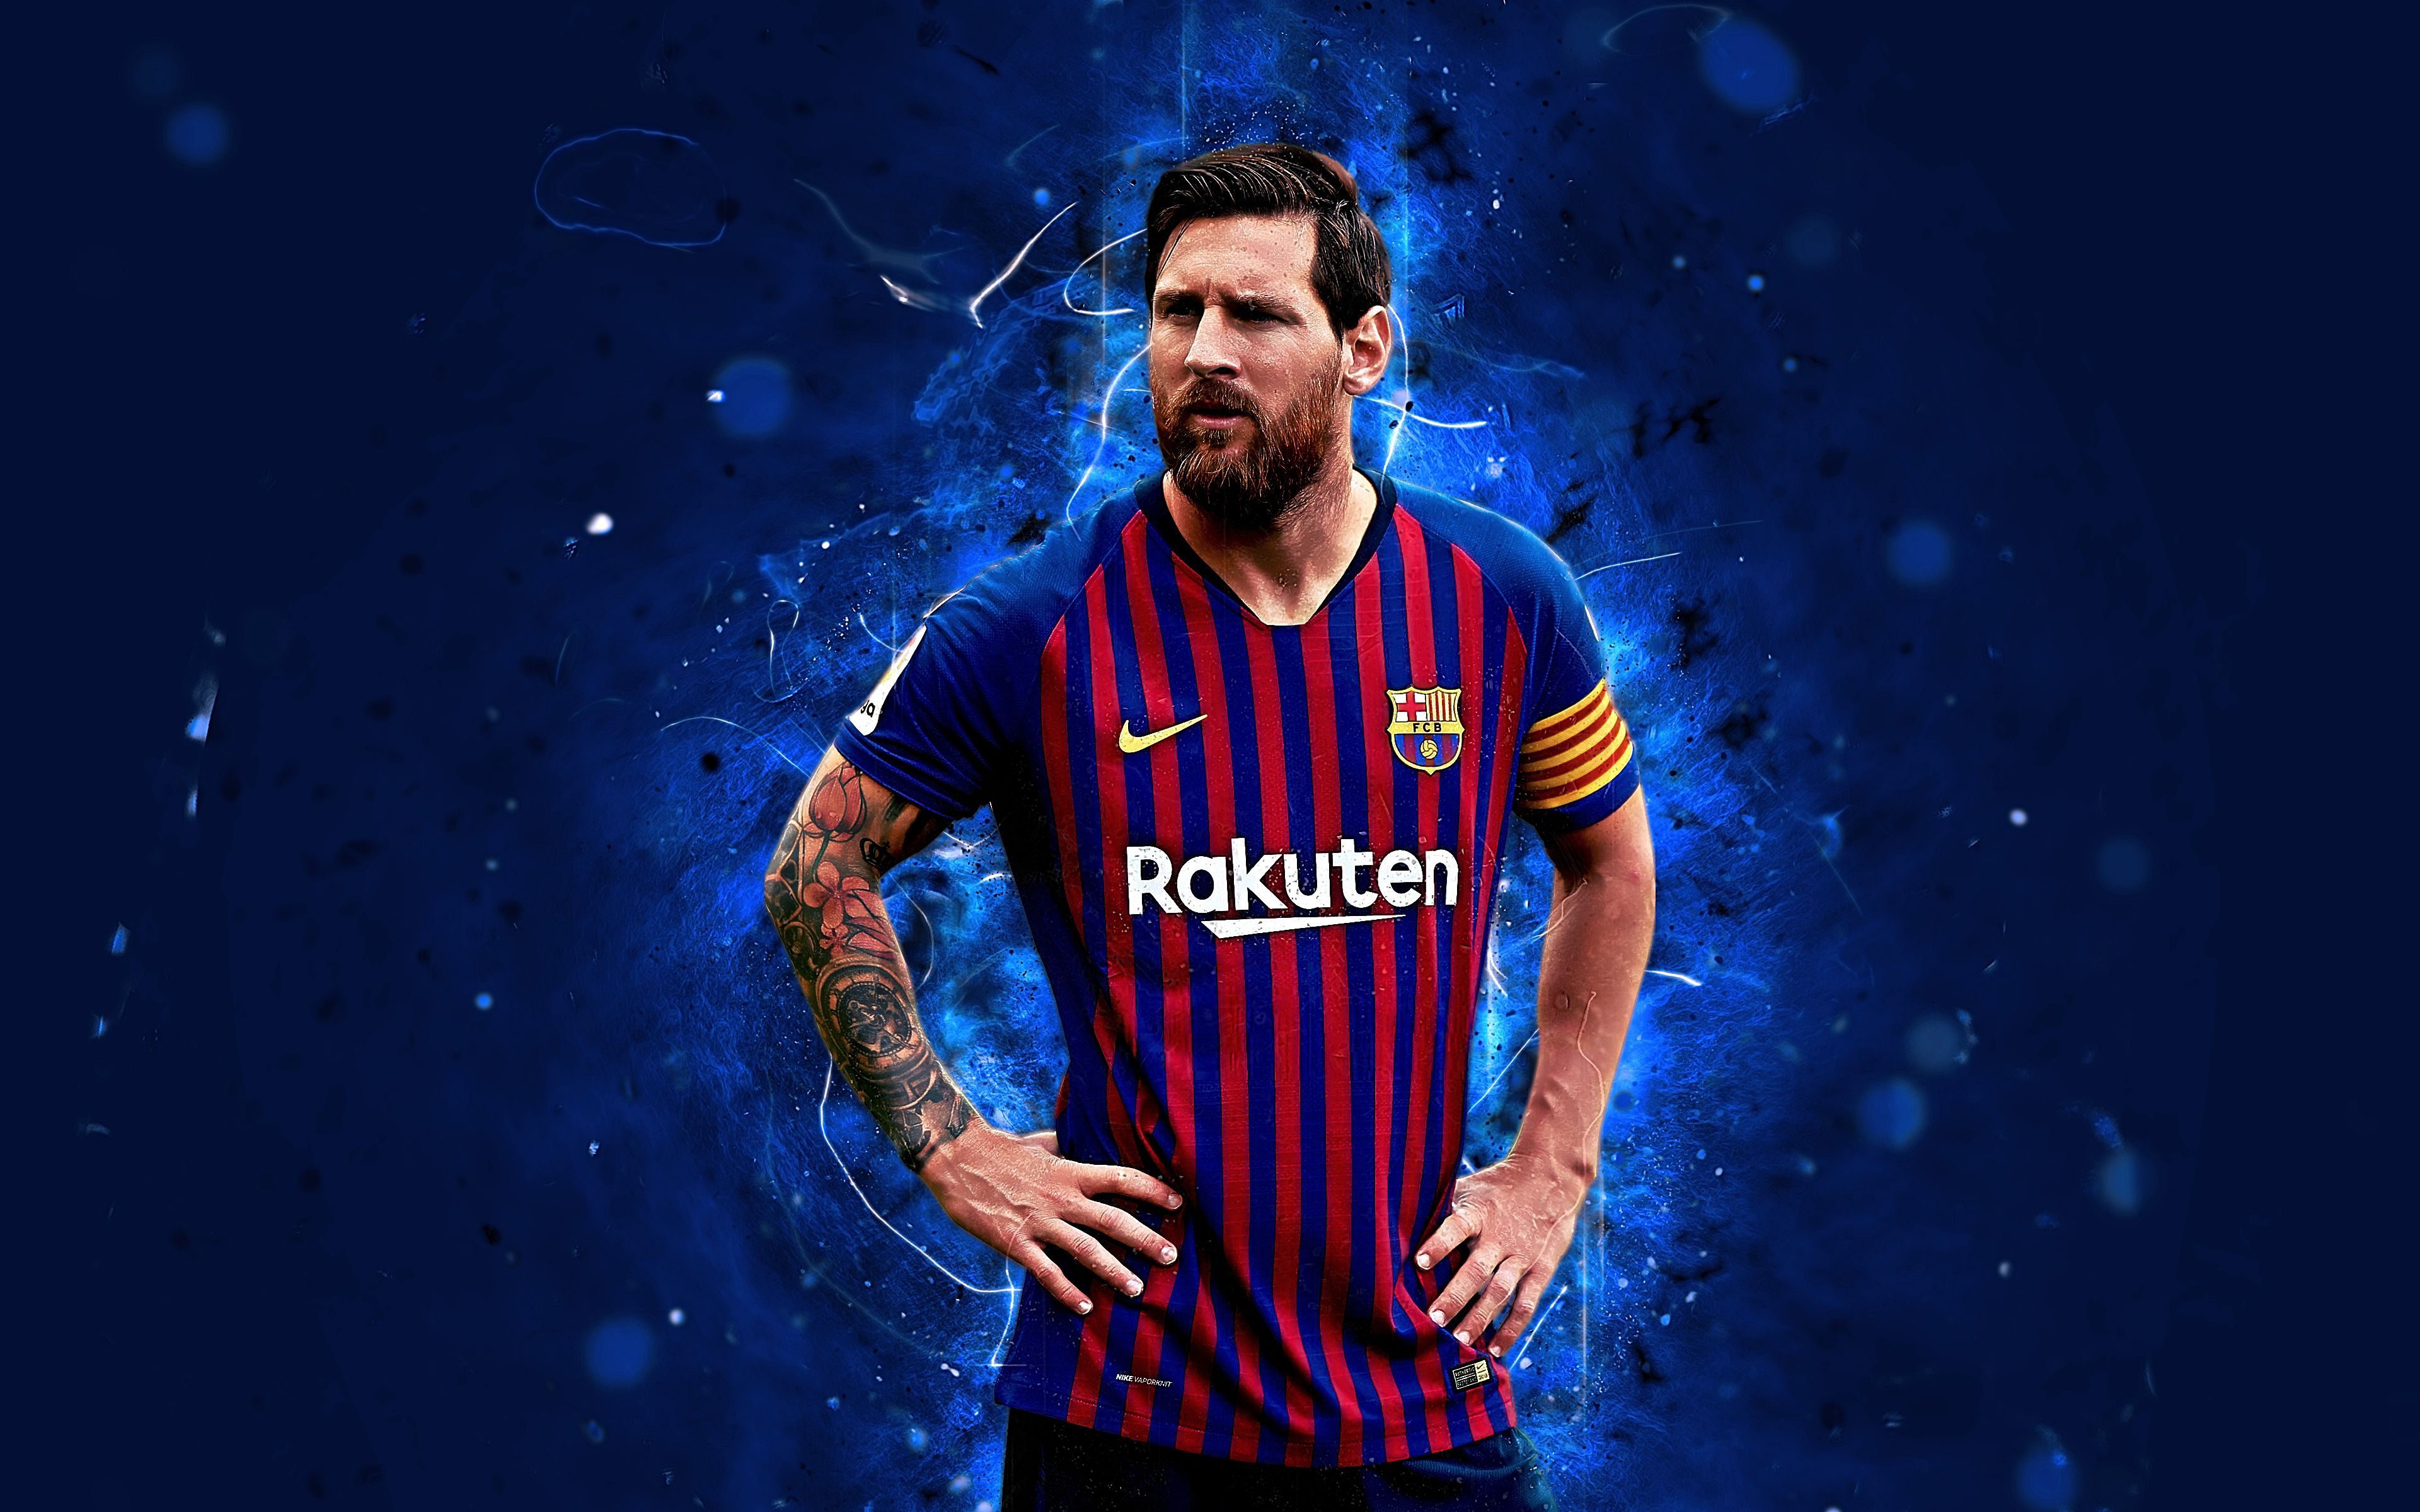 Hình nền Messi 4K: Nếu bạn đang tìm kiếm một hình nền đẹp và chất lượng cao về Lionel Messi, thì bức ảnh này chắc chắn sẽ không làm bạn thất vọng. Hình nền Messi 4K này sẽ khiến máy tính hoặc điện thoại của bạn trở nên đẹp hơn và thể hiện được tình yêu của bạn dành cho cầu thủ huyền thoại này.